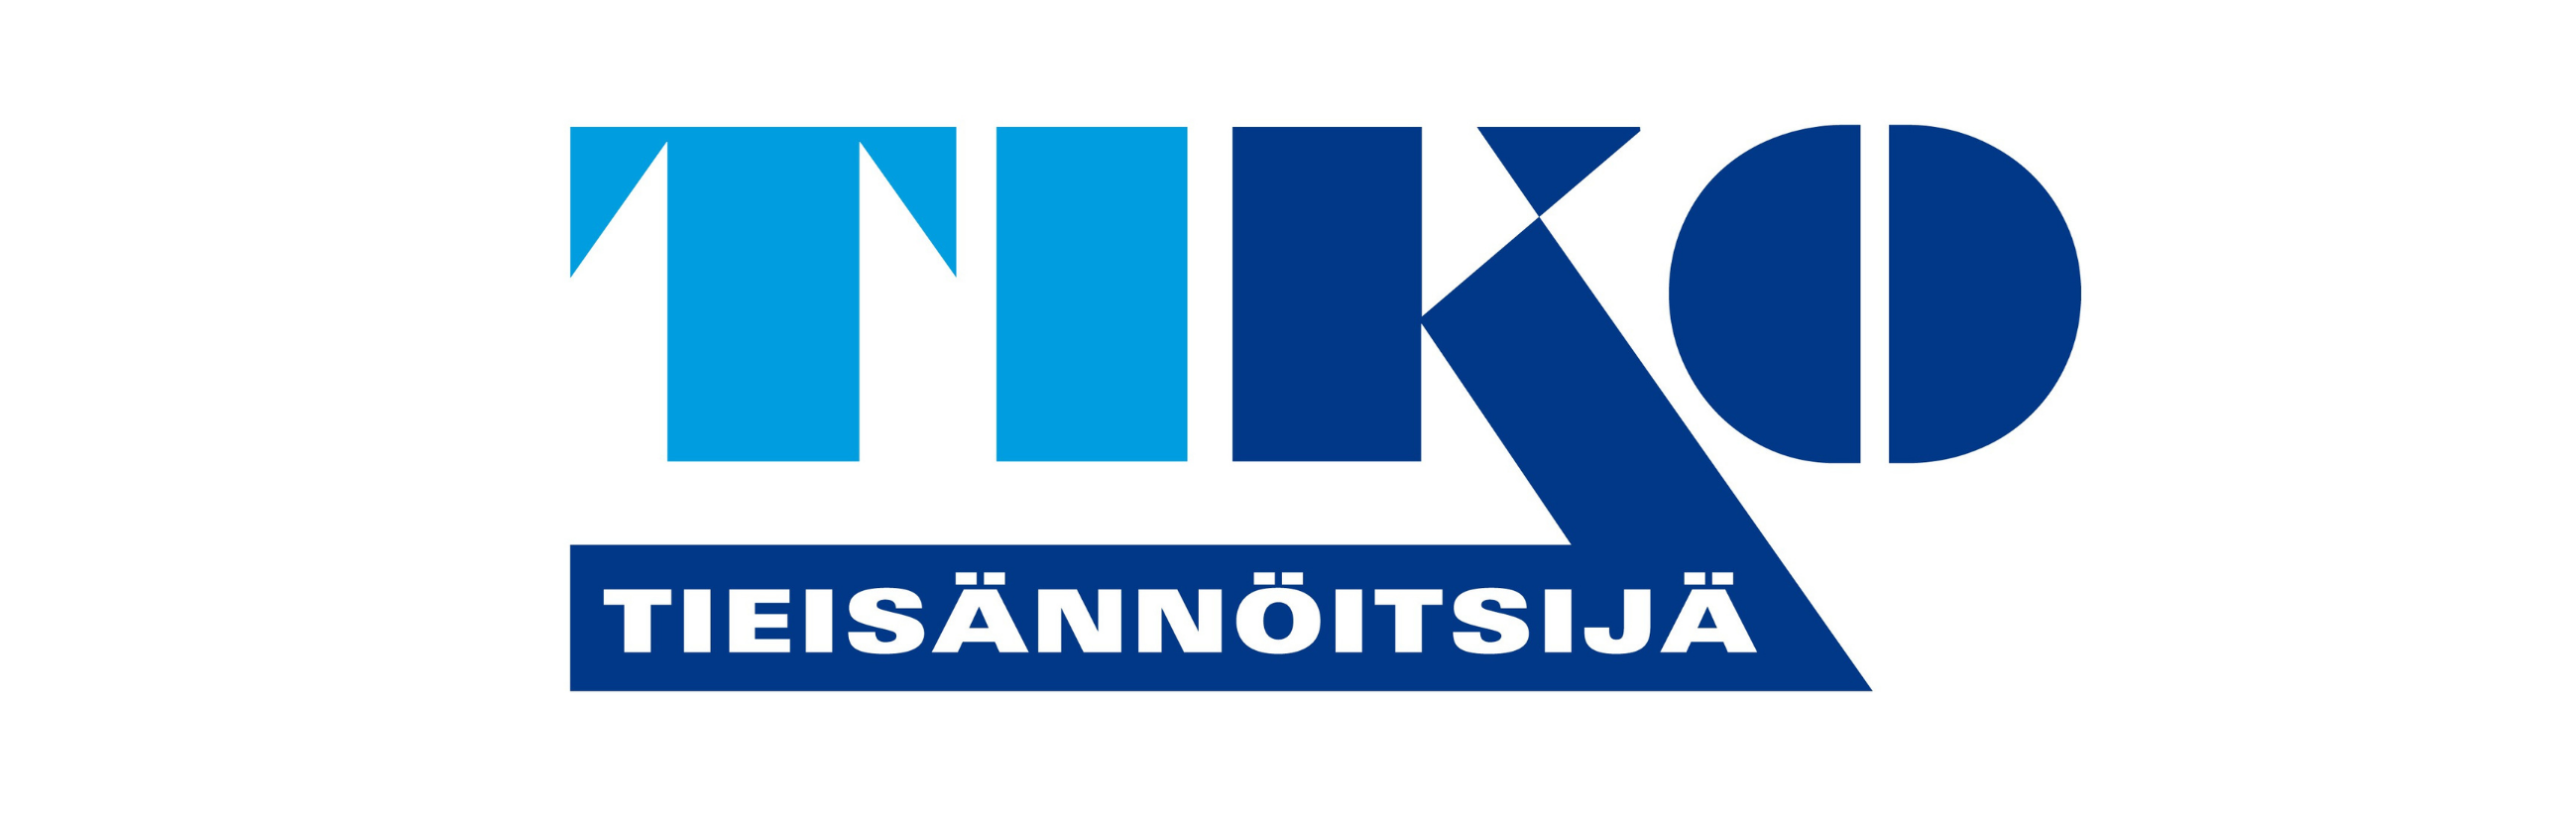 Suomen tieyhdistys | Tieisännöitsijöiden yhteystietoja